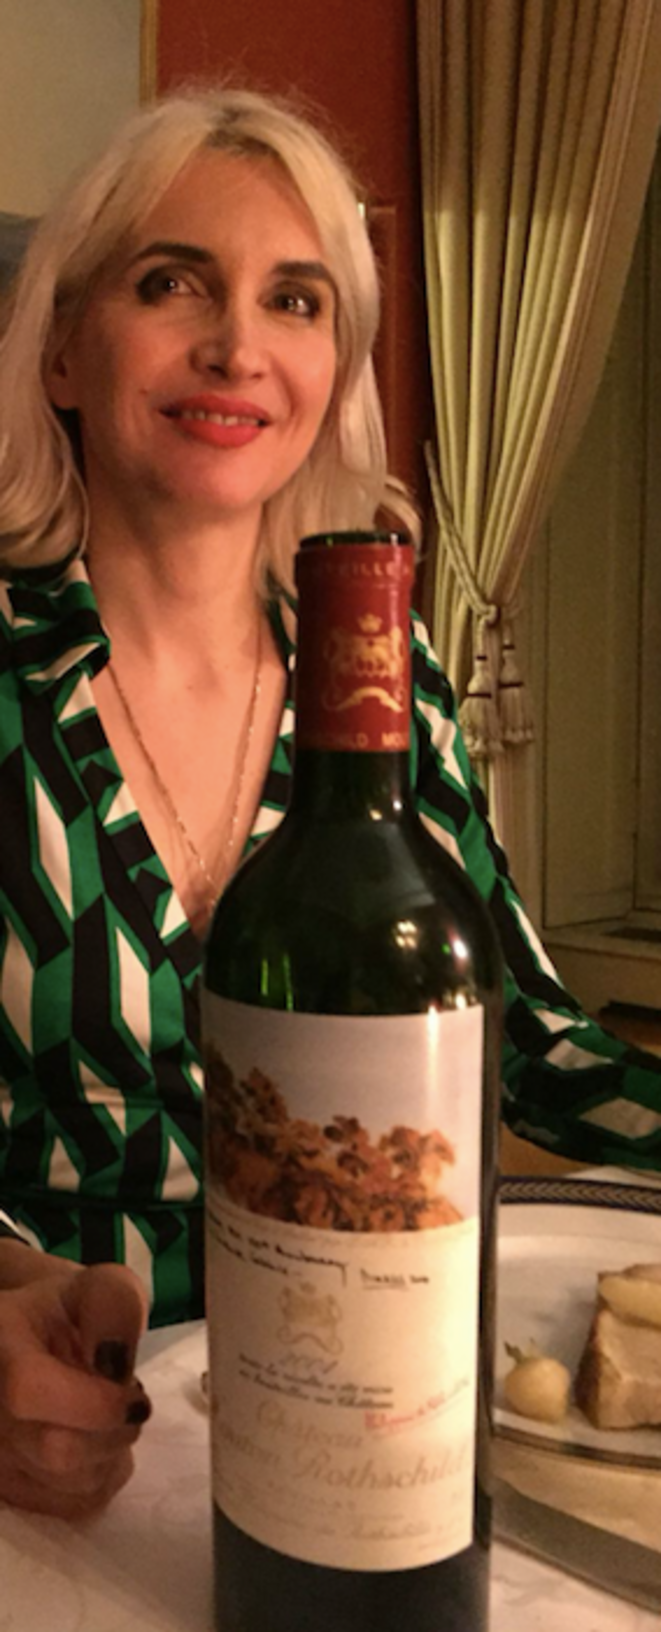 Séverine de Rugy smiling behind a bottle of Mouton-Rothschild 2004, valued at around 500 euros. © DR/Mediapart